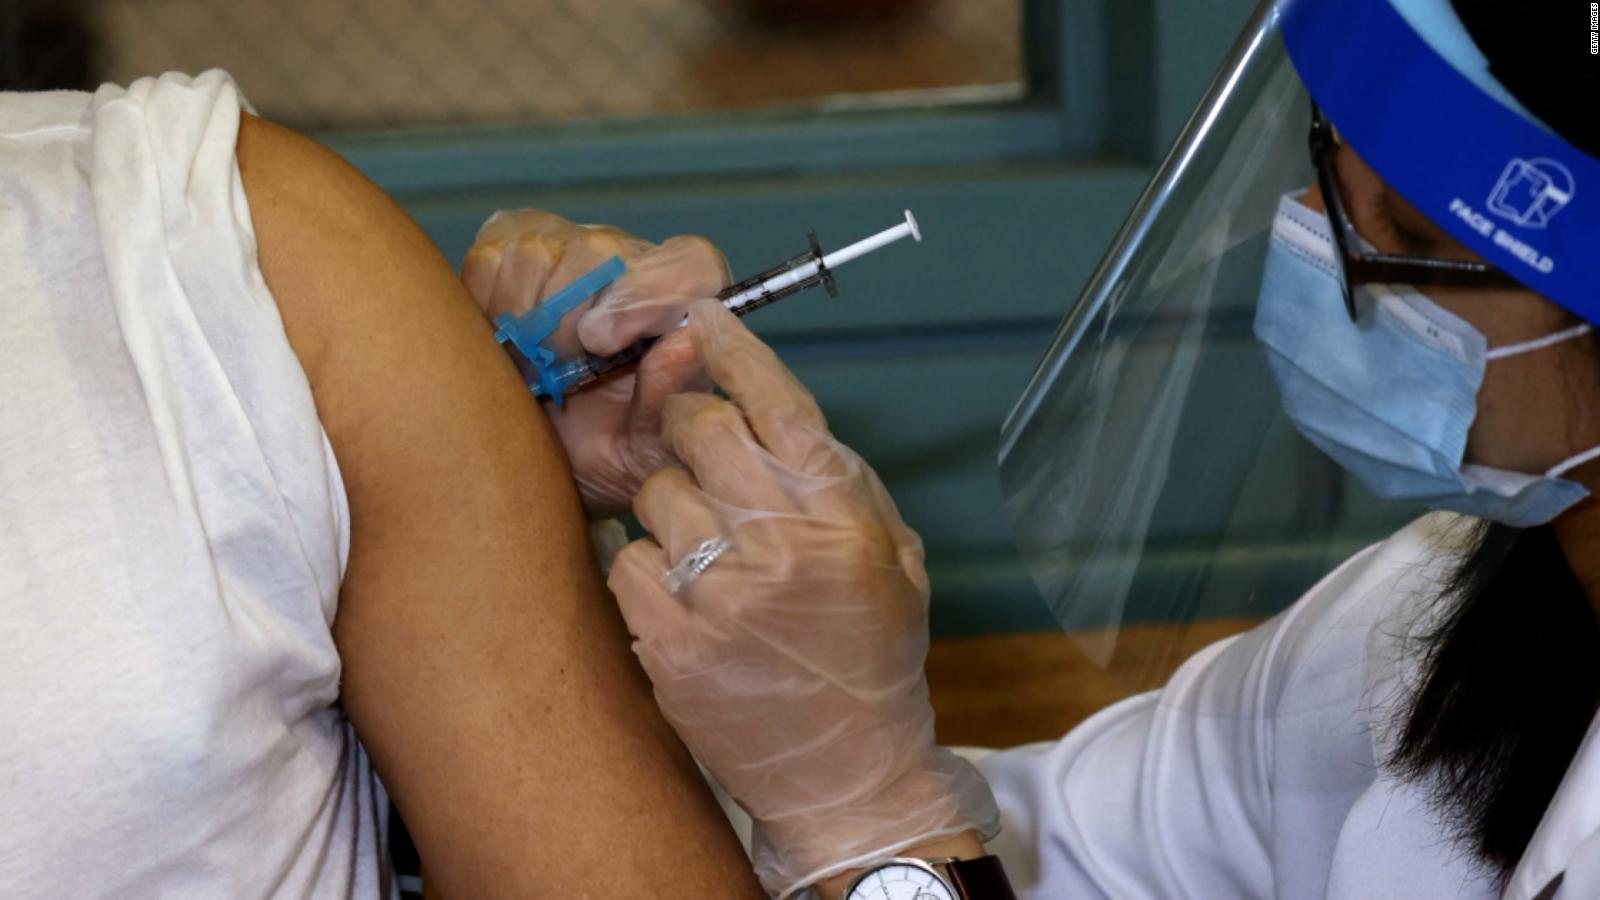 Los refuerzos para las personas que recibieron las vacunas de Moderna y de J&J se abordarán con una urgencia similar, dice directora de los CDC